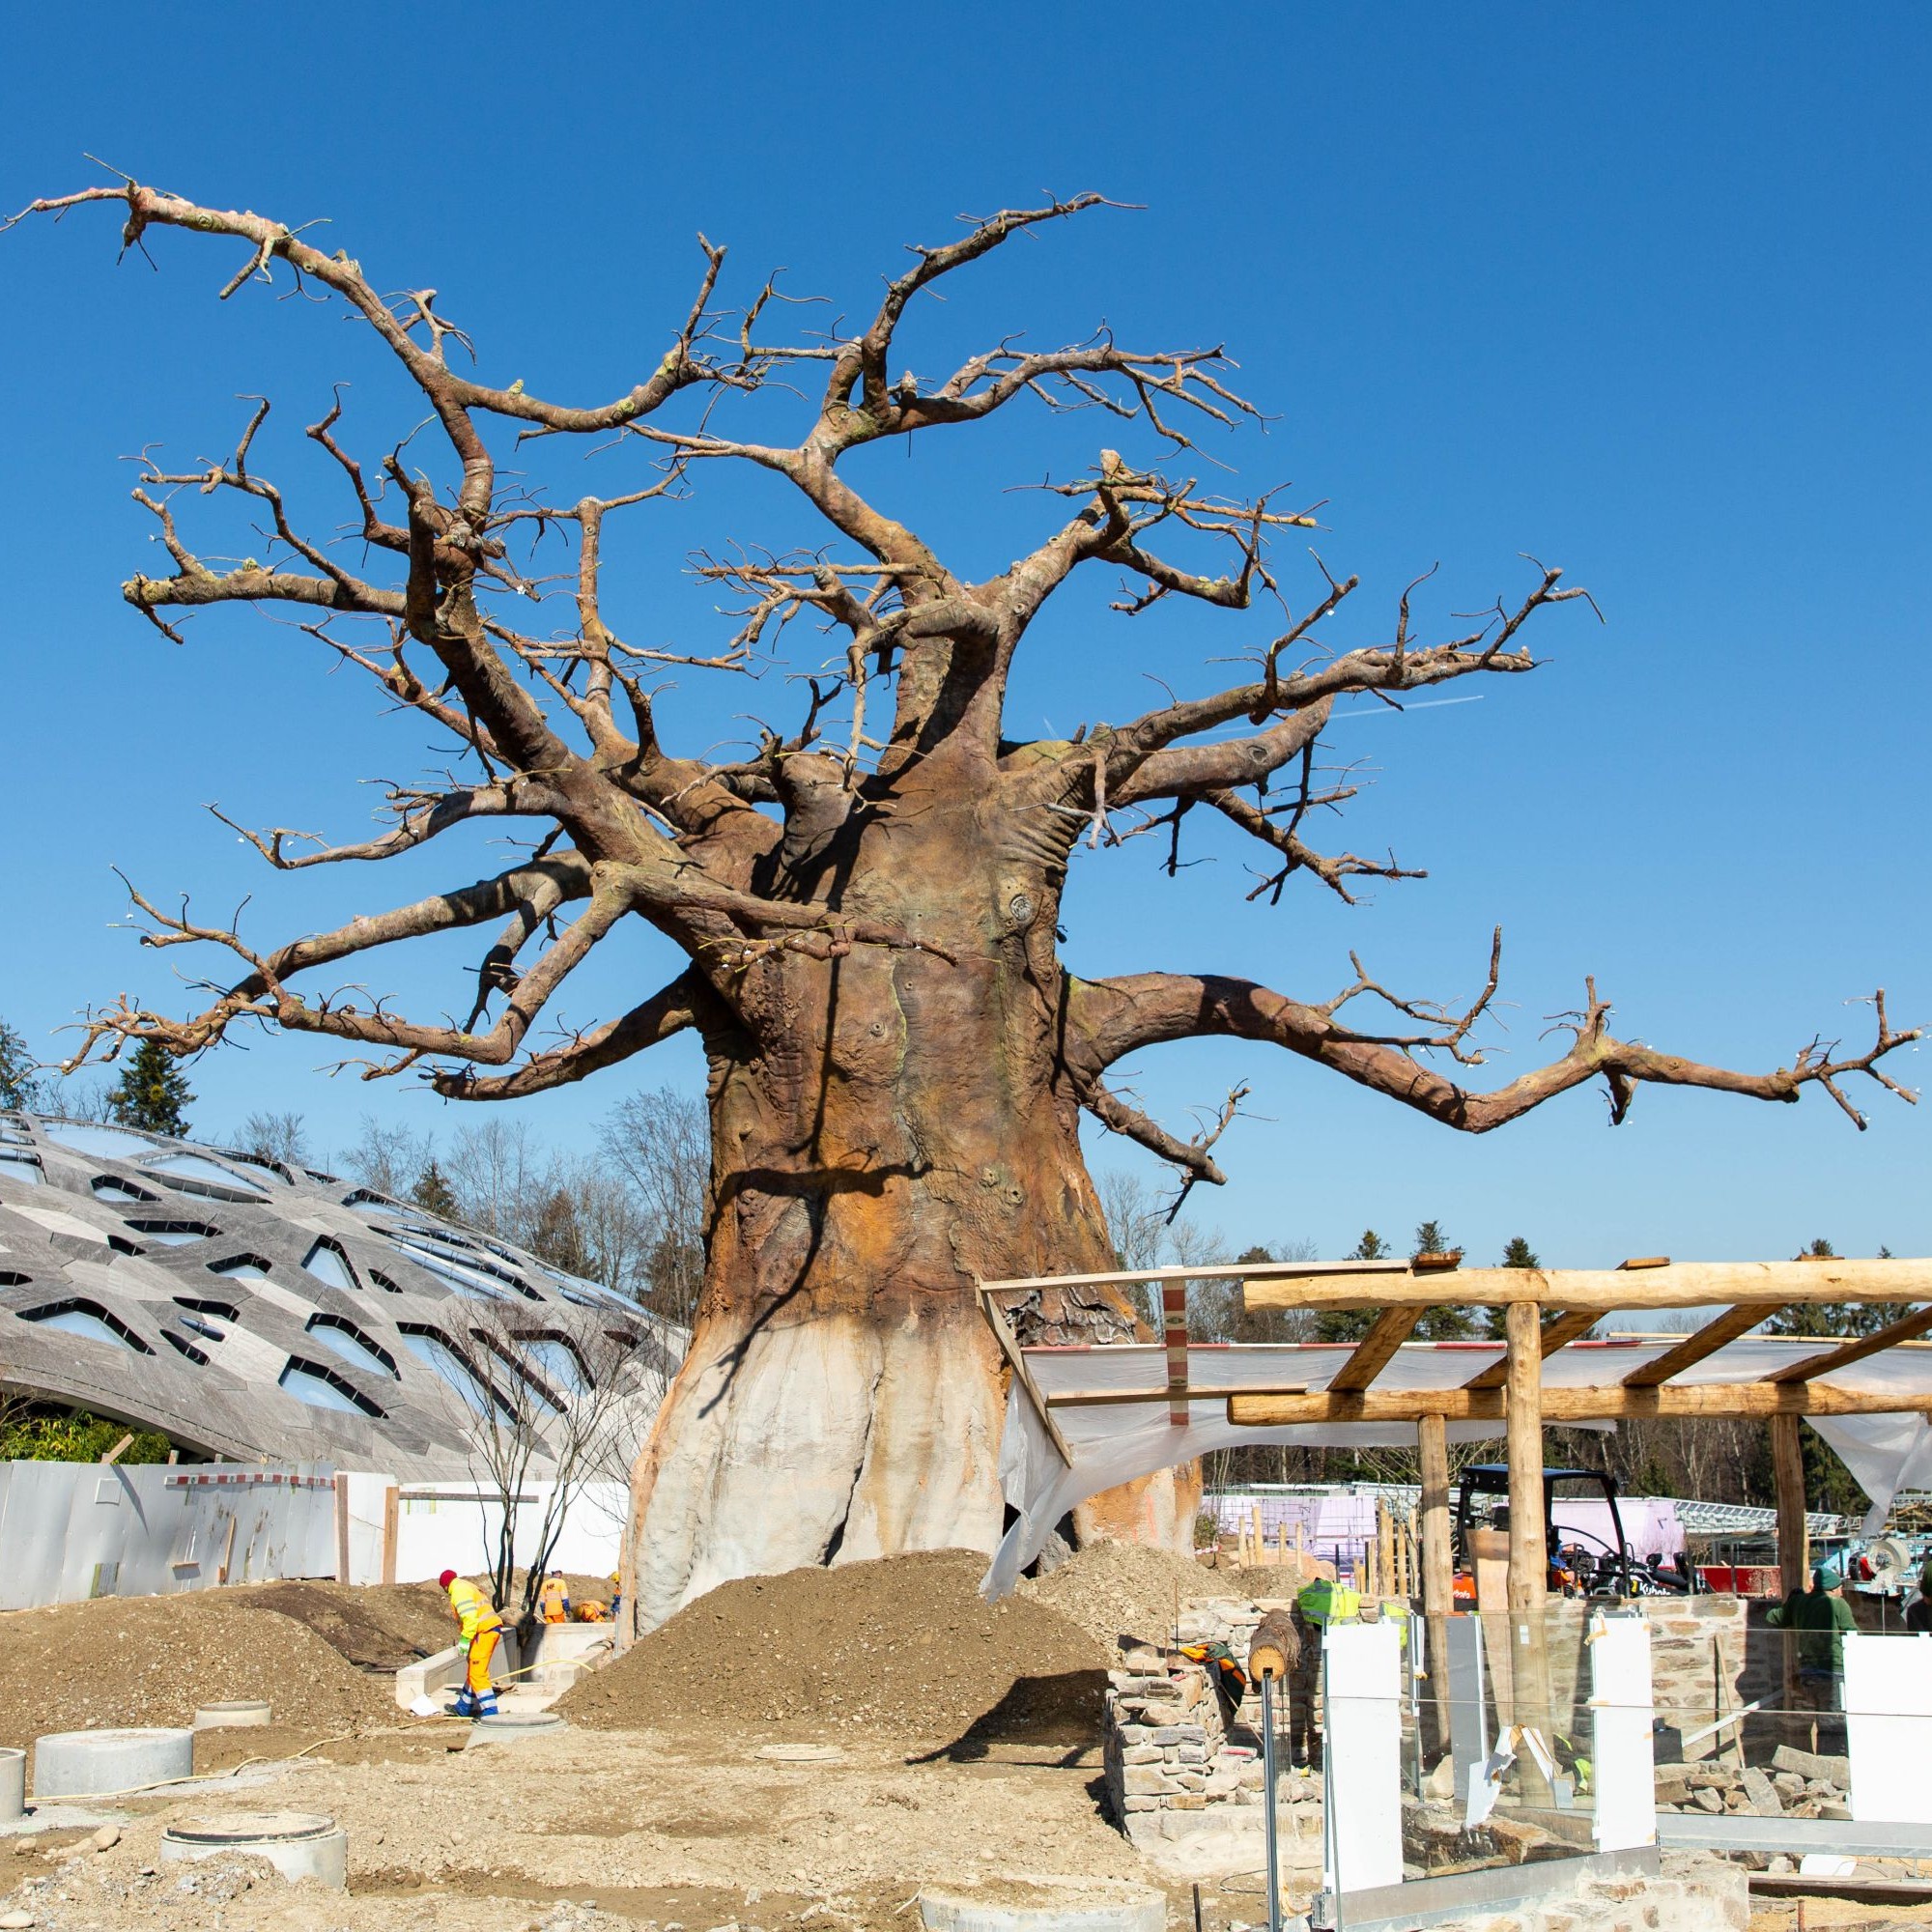 Zum Landschaftsbild gehören schirmartige Bäume, kleinere Buschgruppen sowie vier künstliche Baobabs. 